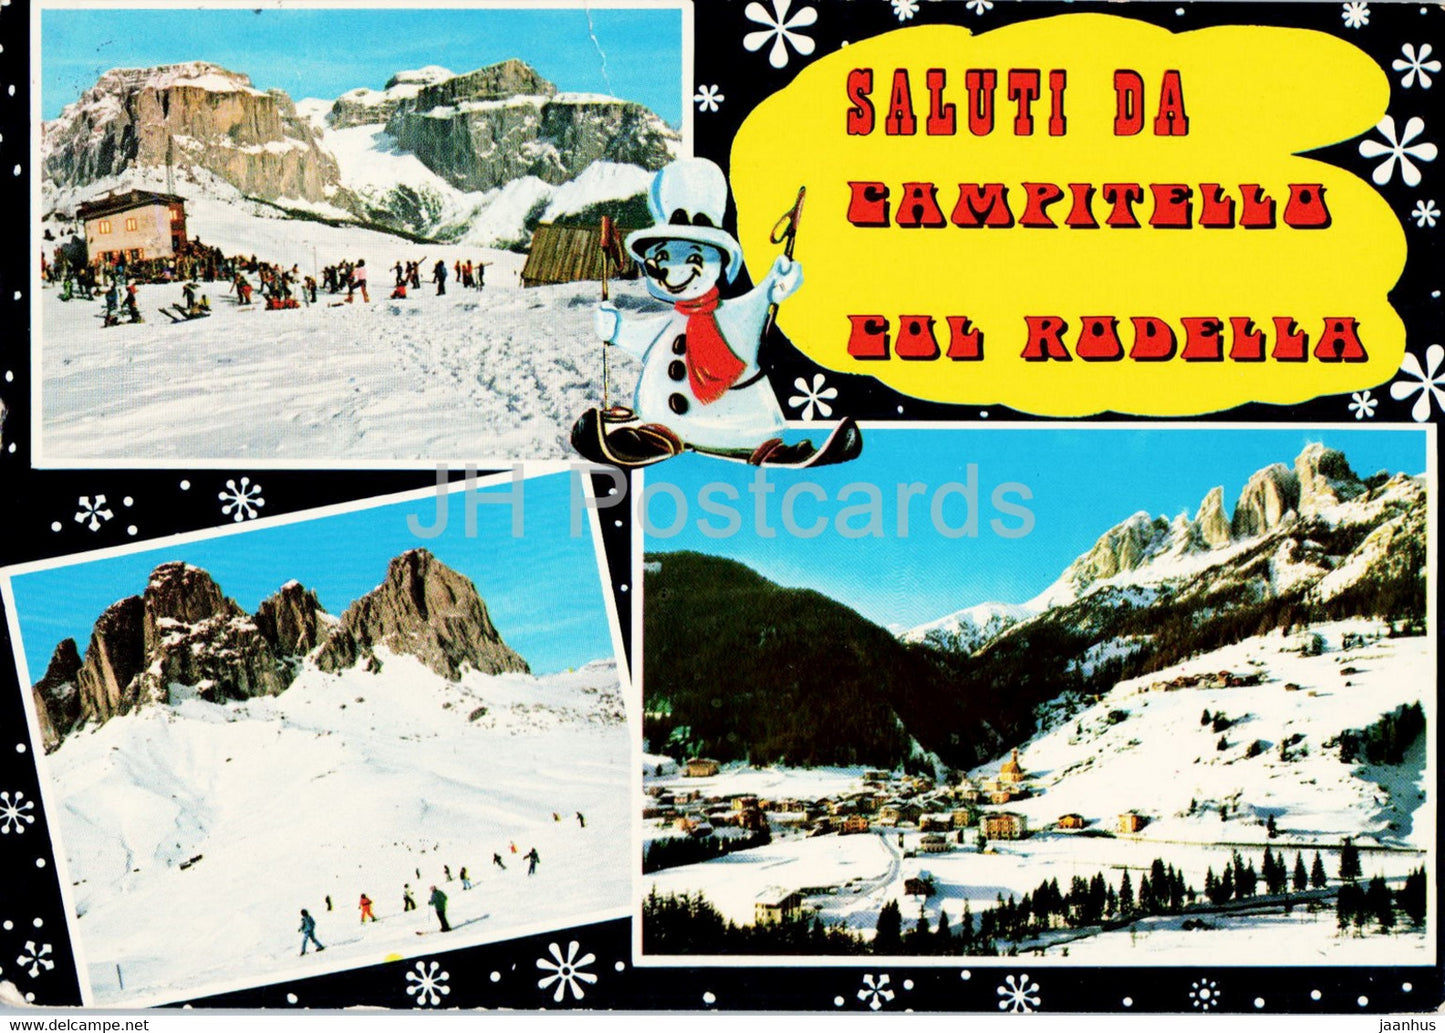 Saluti da Campitello Col Rodella - 1982 - Italy - used - JH Postcards